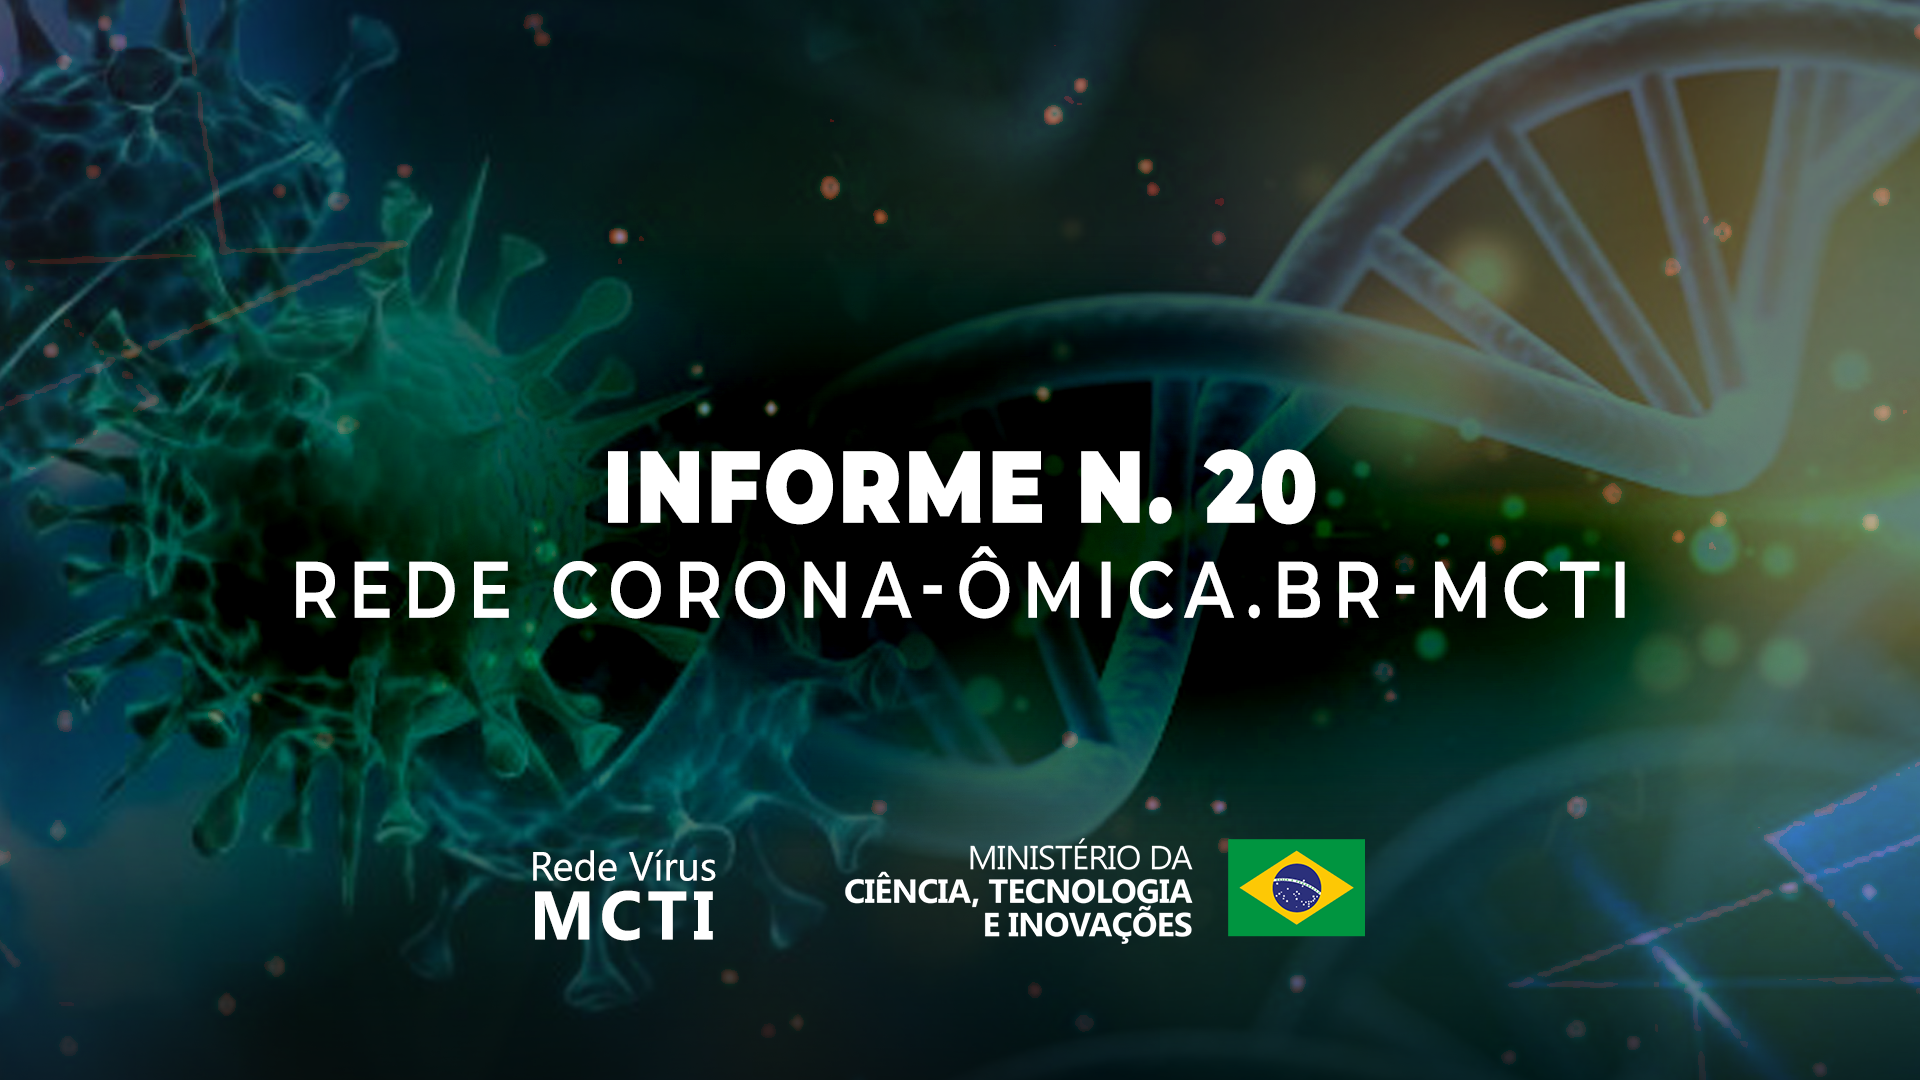 Rede Corona-Ômica BR-MCTI identifica possível nova variante de SARS-CoV-2 emergente no Estado do Rio Grande do Sul